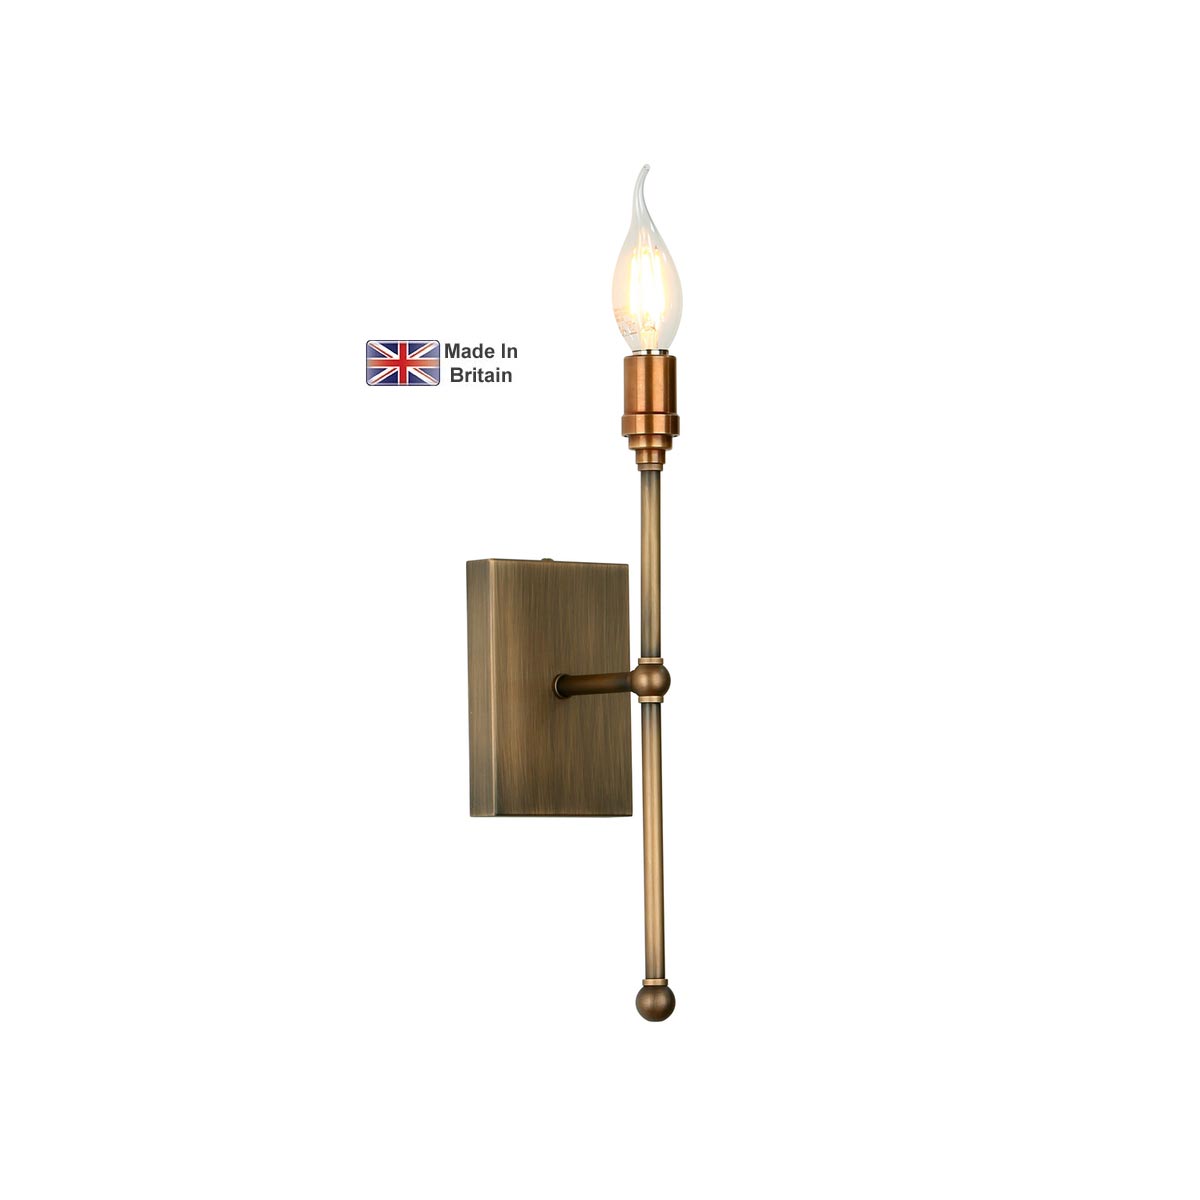 David Hunt Durrell Handmade 1 Lamp Candlestick Wall Light Solid Brass